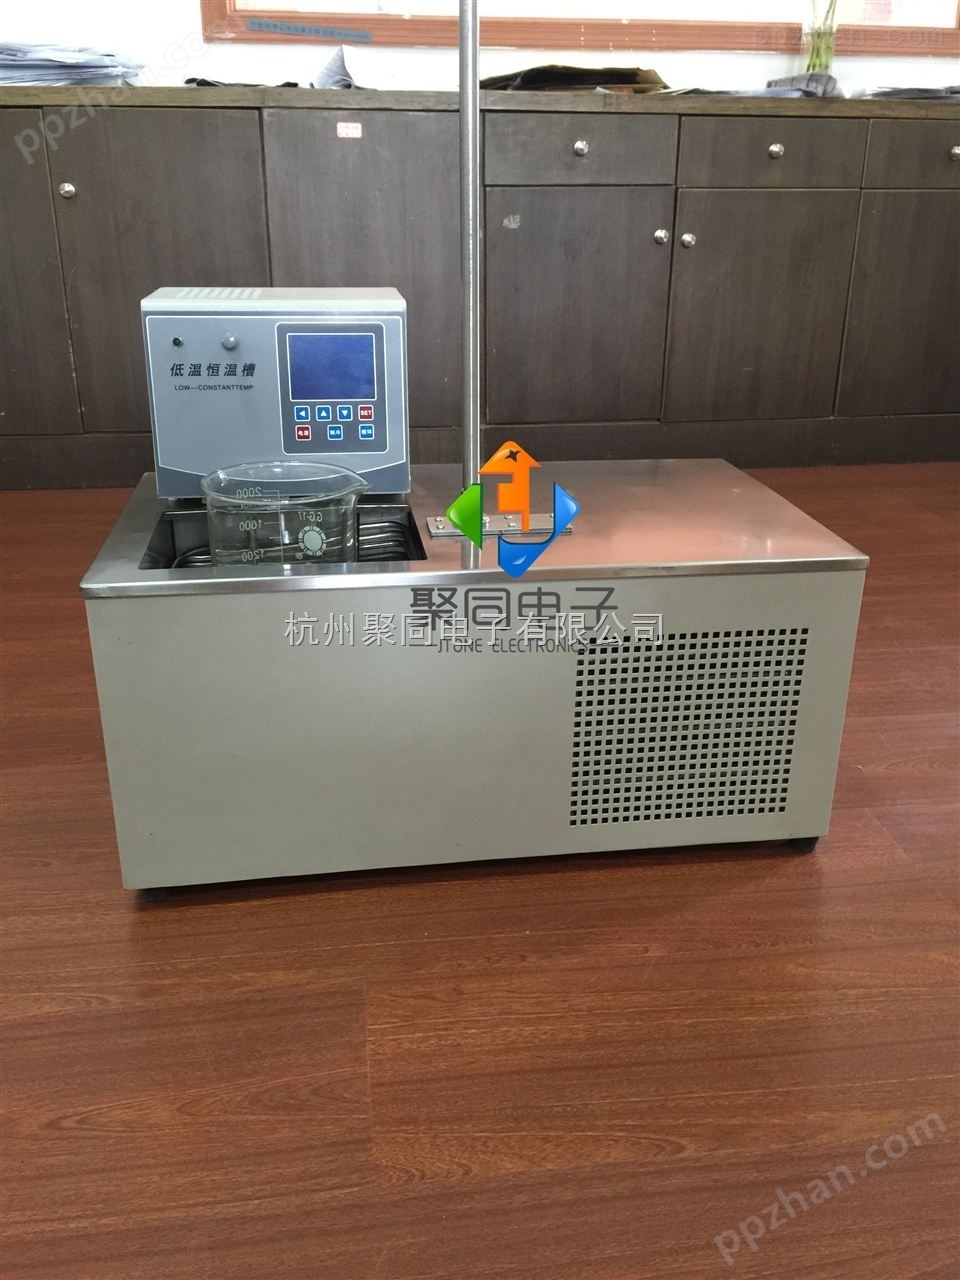 滨州聚同卧式高精度低温恒温槽JTGDH-1006W生产商、维护保养